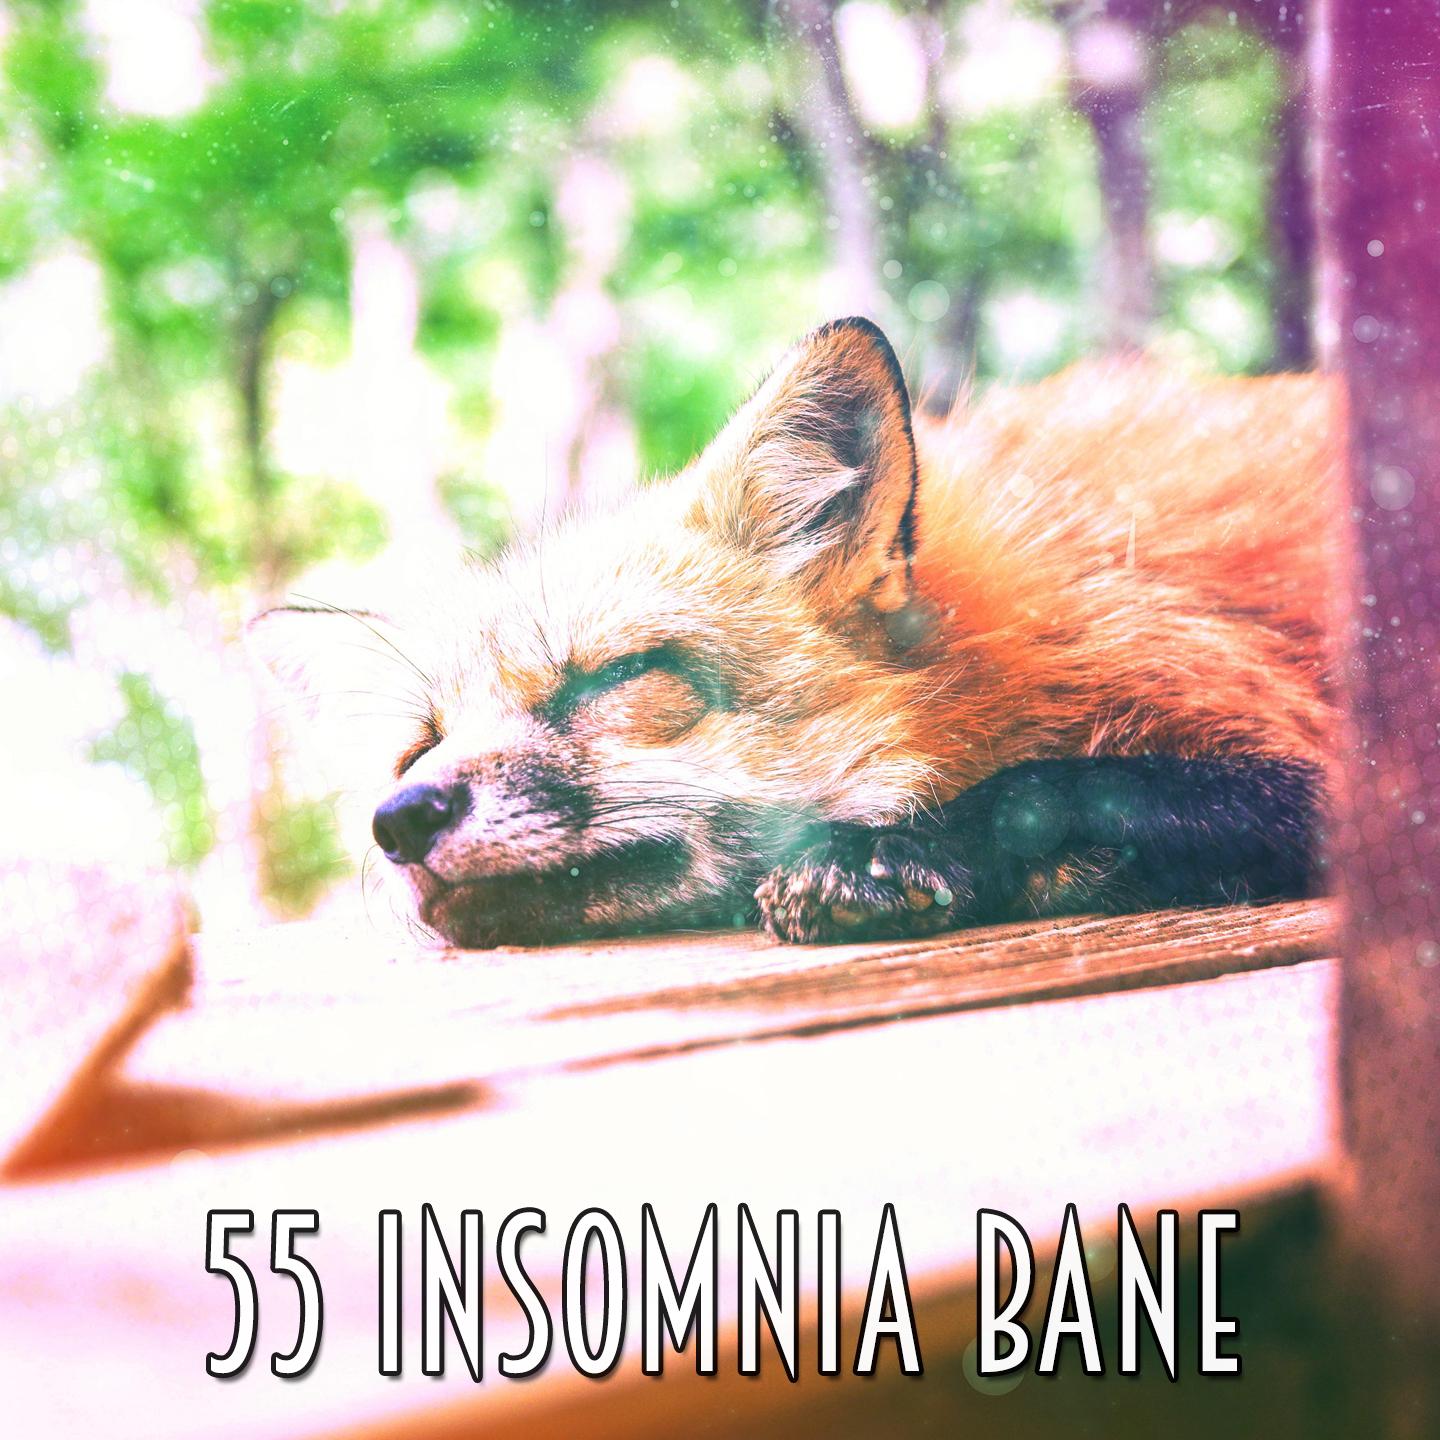 55 Insomnia Bane